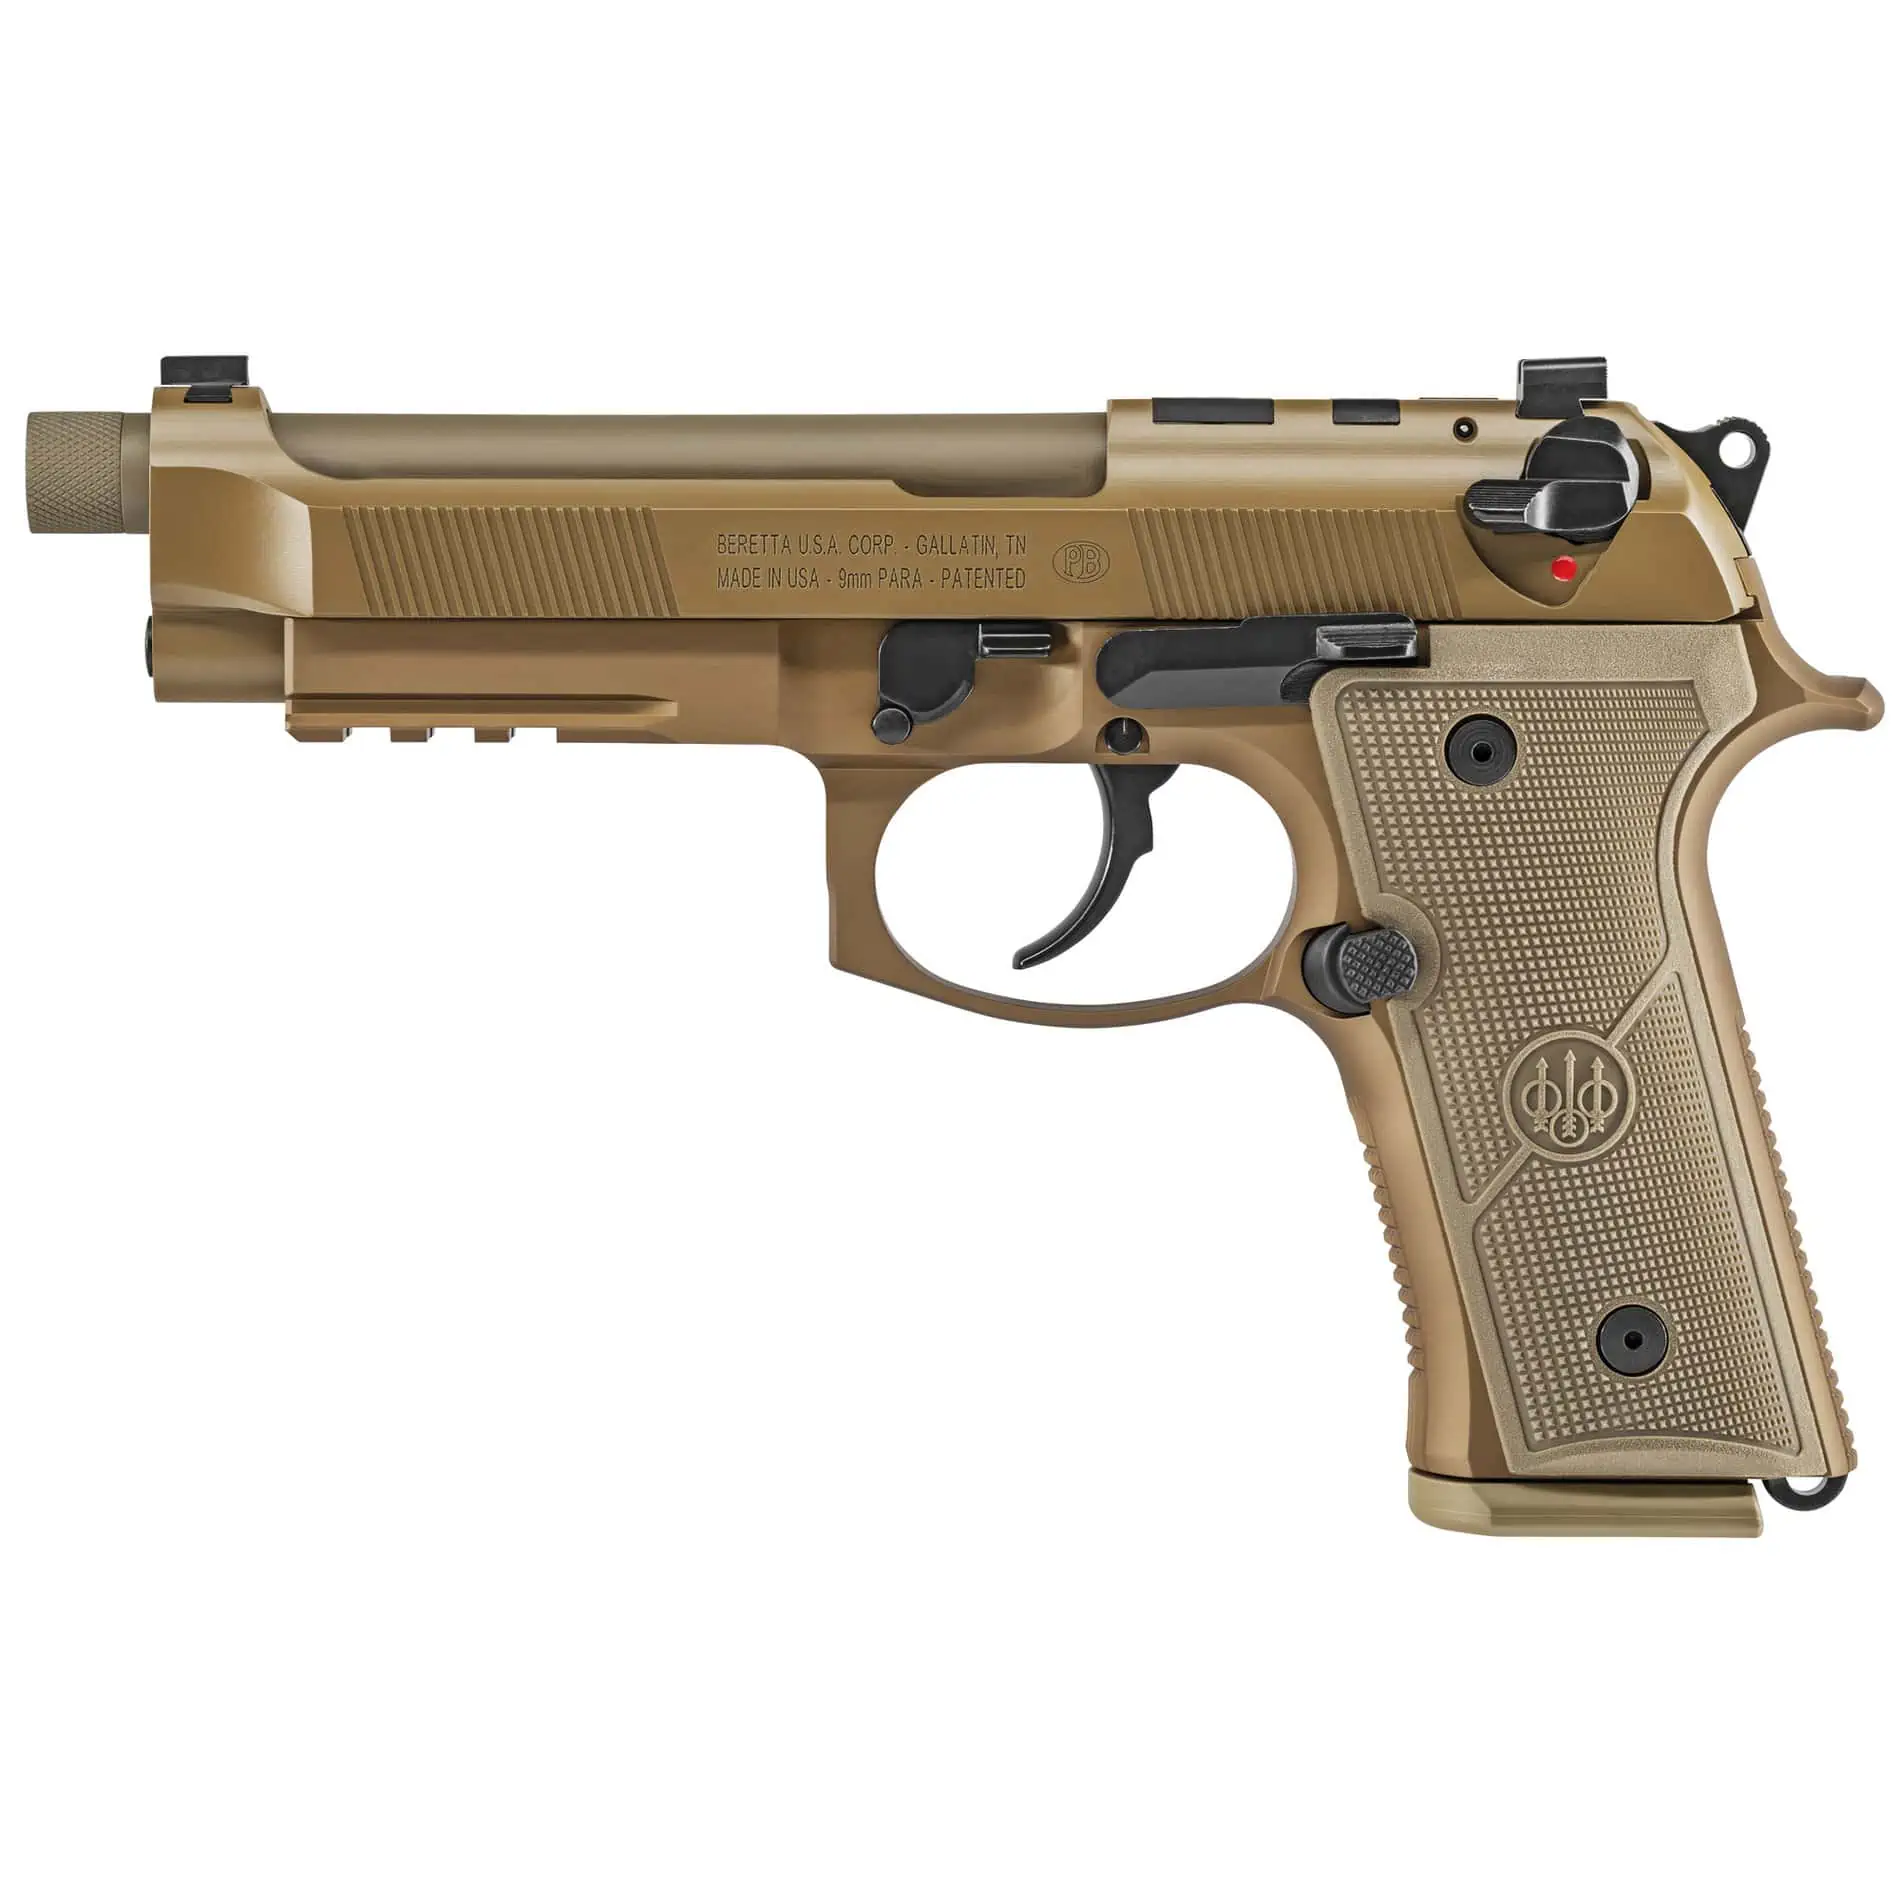 Beretta M9A4 9mm 5.1" Pistol - Decocker Only - 18 Round - Flat Dark Earth